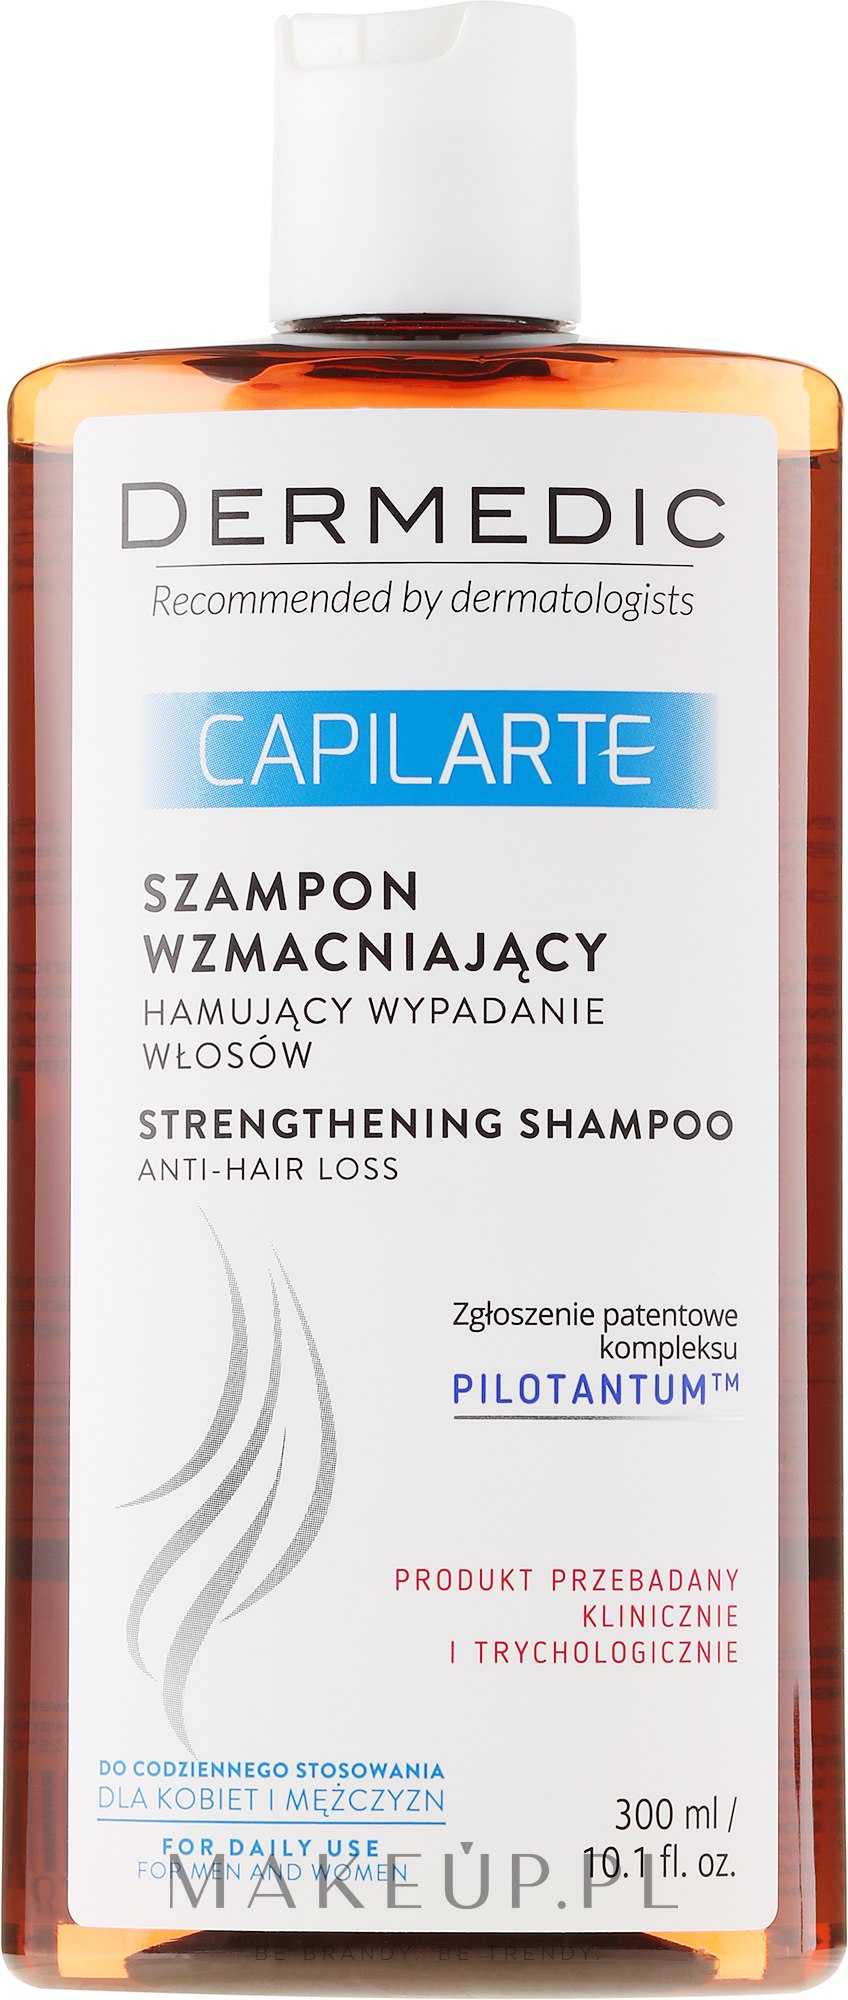 dermedic capilarte szampon wzmacniający